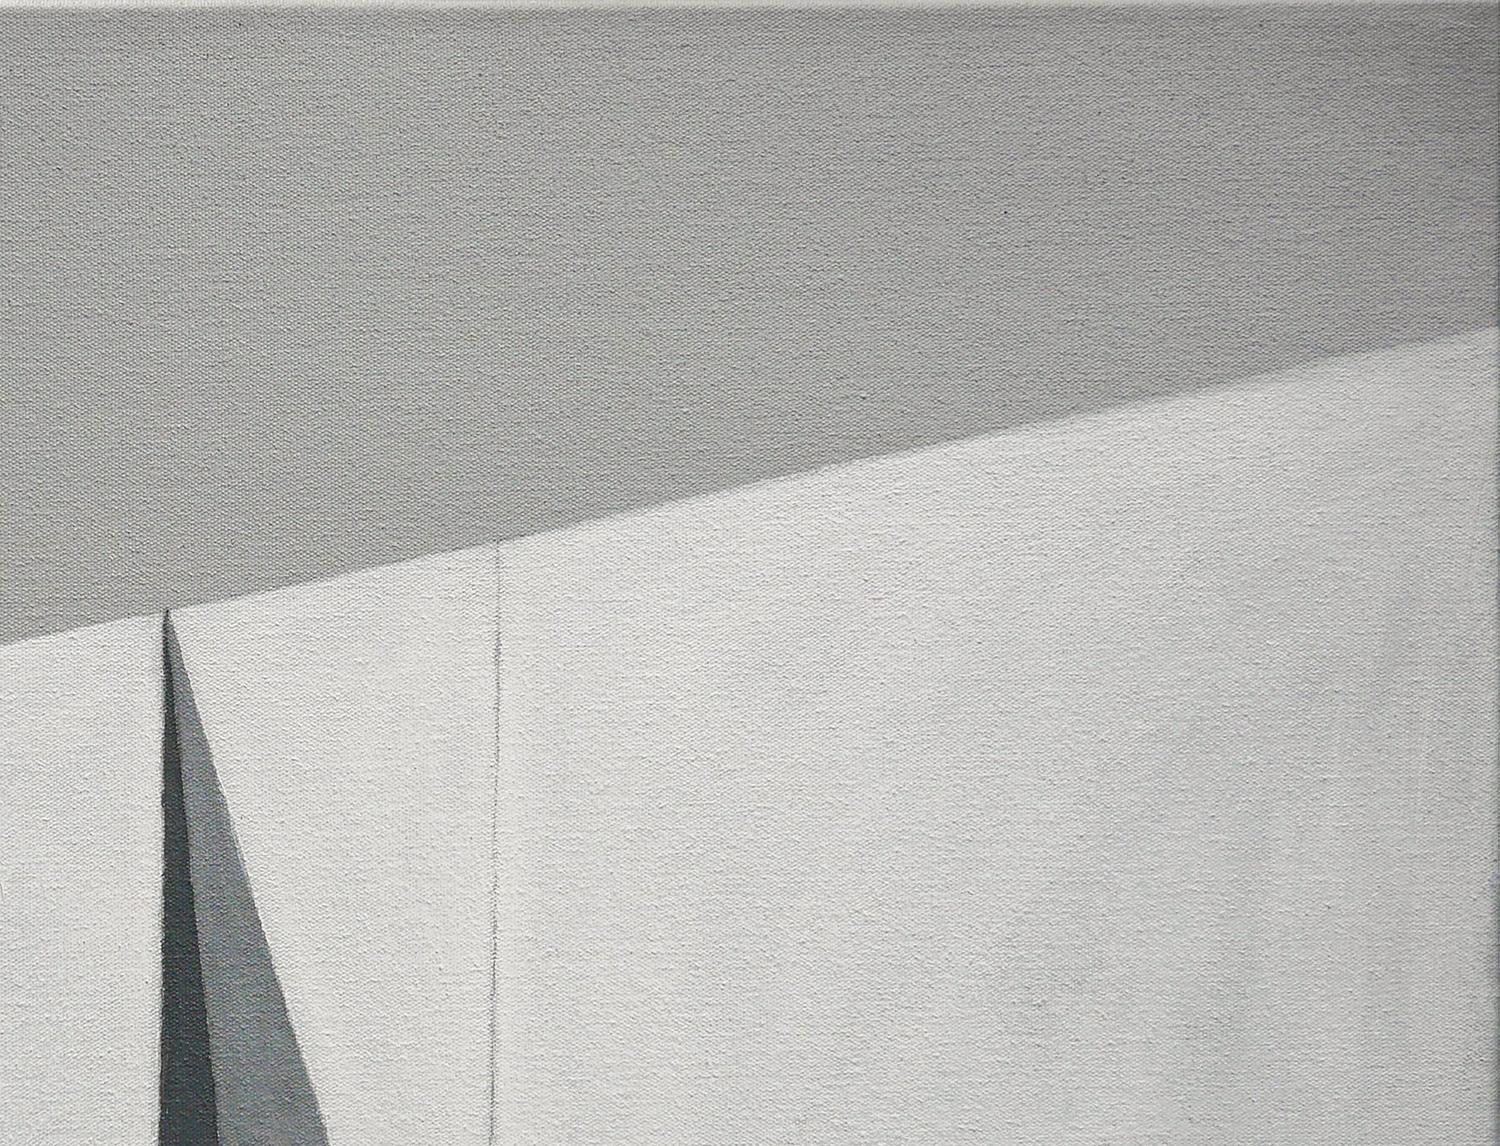 Peinture abstraite de paysage contemporain en gris, noir et blanc de l'artiste Scott Woodard de Houston, TX. Le tableau représente une scène surréaliste avec une structure architecturale contemporaine moderniste au milieu d'un paysage gris et vide.